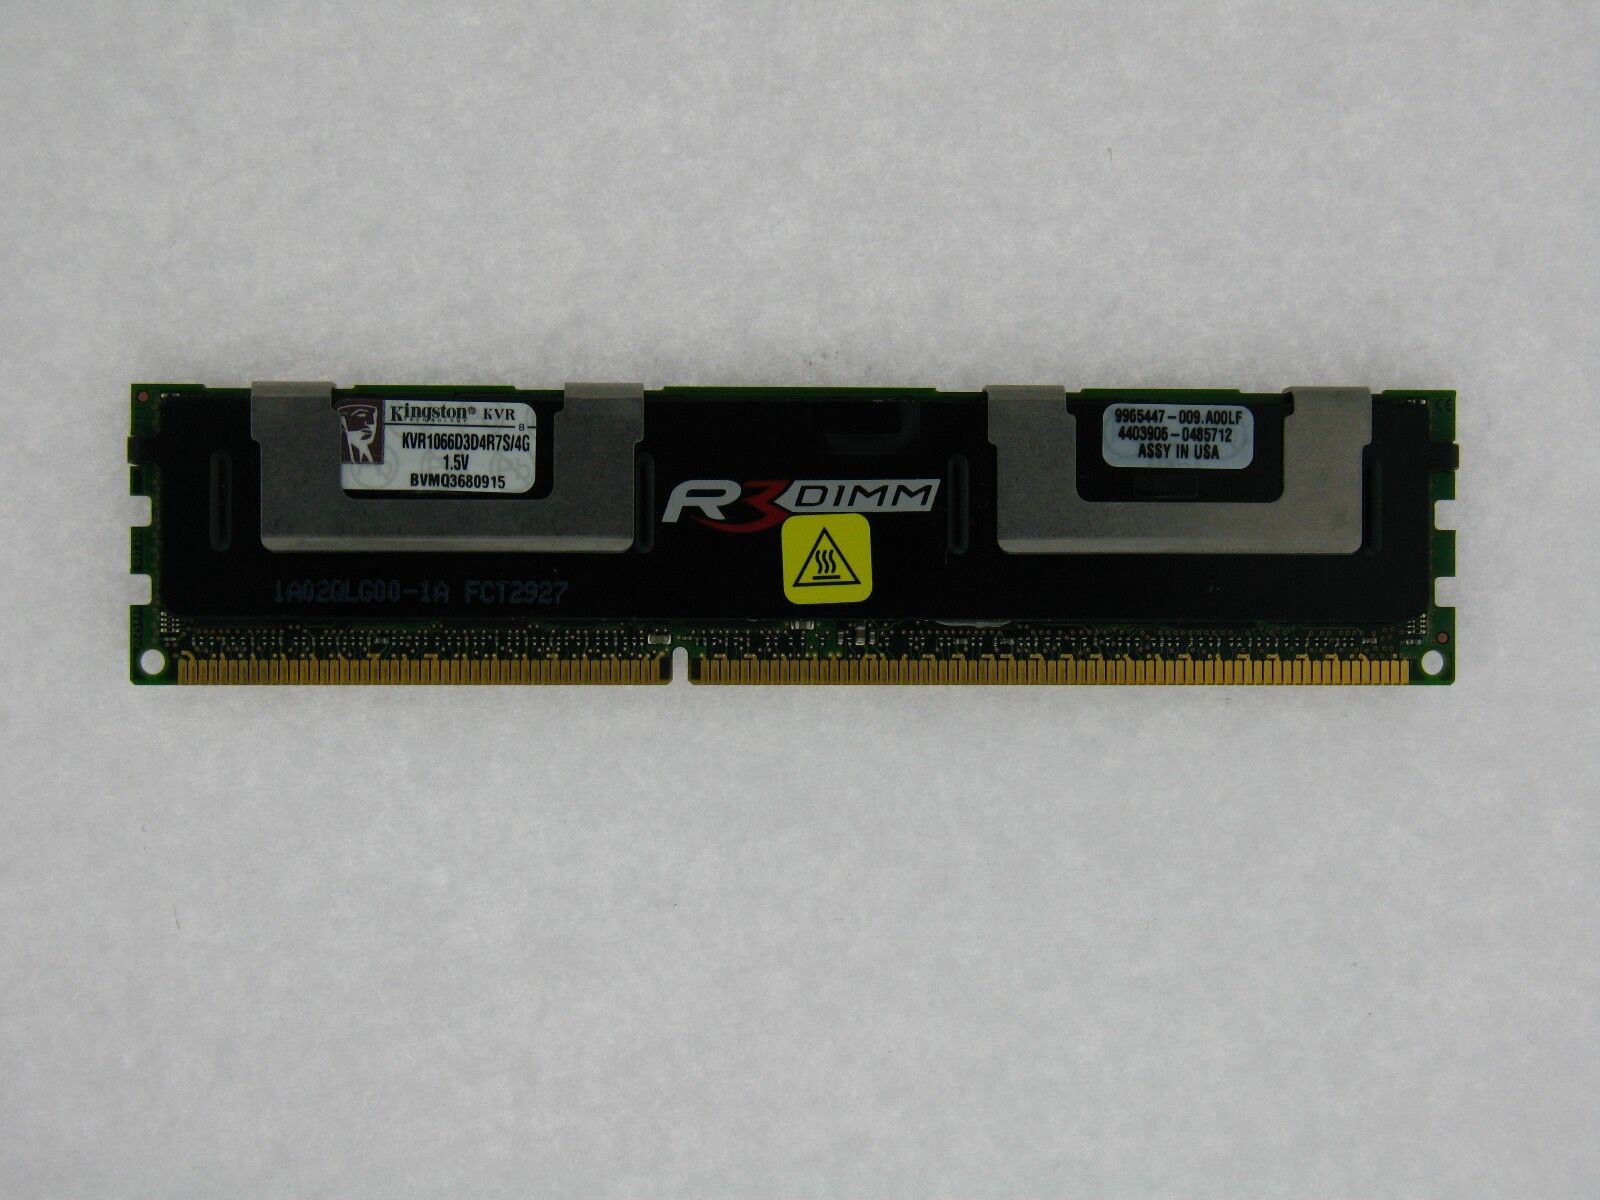 Kingston 4 GB PC3 Memory KVR1066D3D4R7S/4G